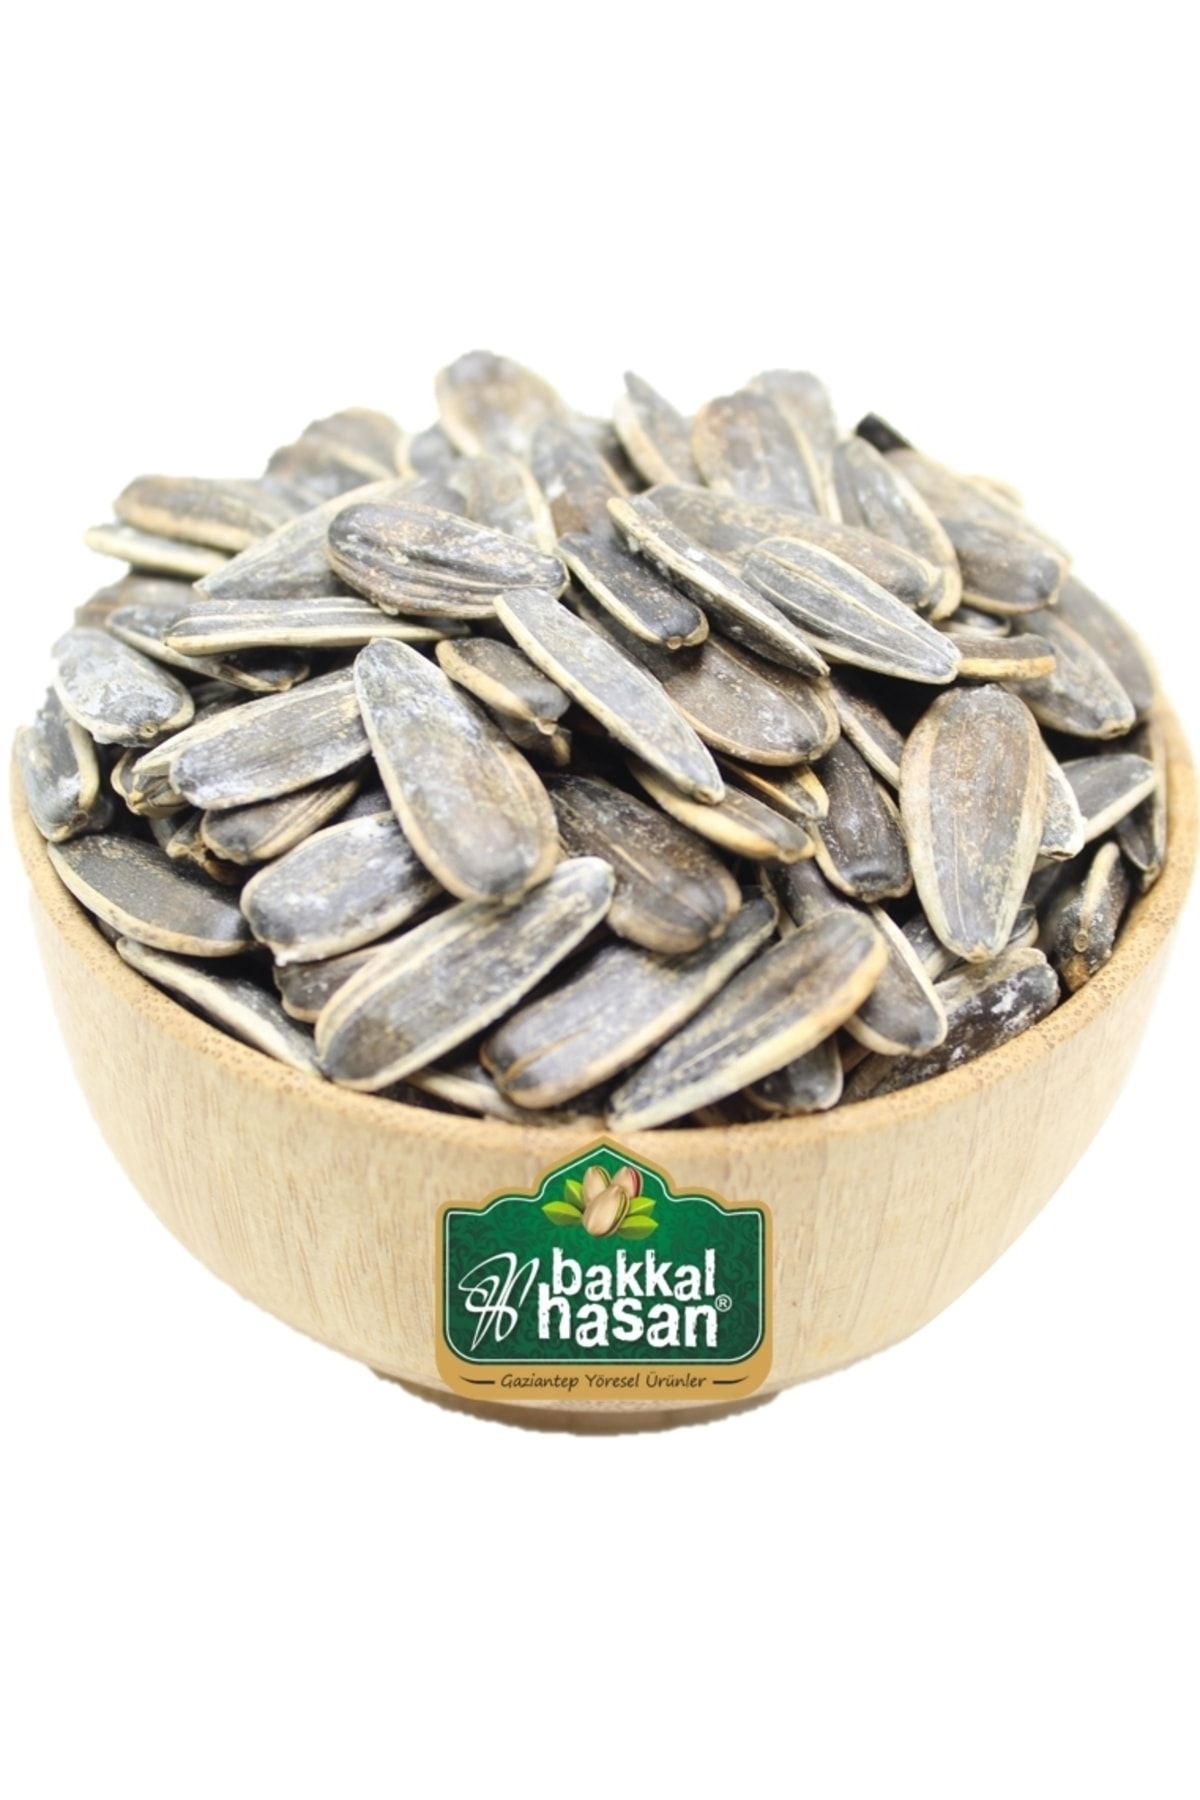 bakkal hasan Dakota Kavrulmuş Tuzlu - 3 kg